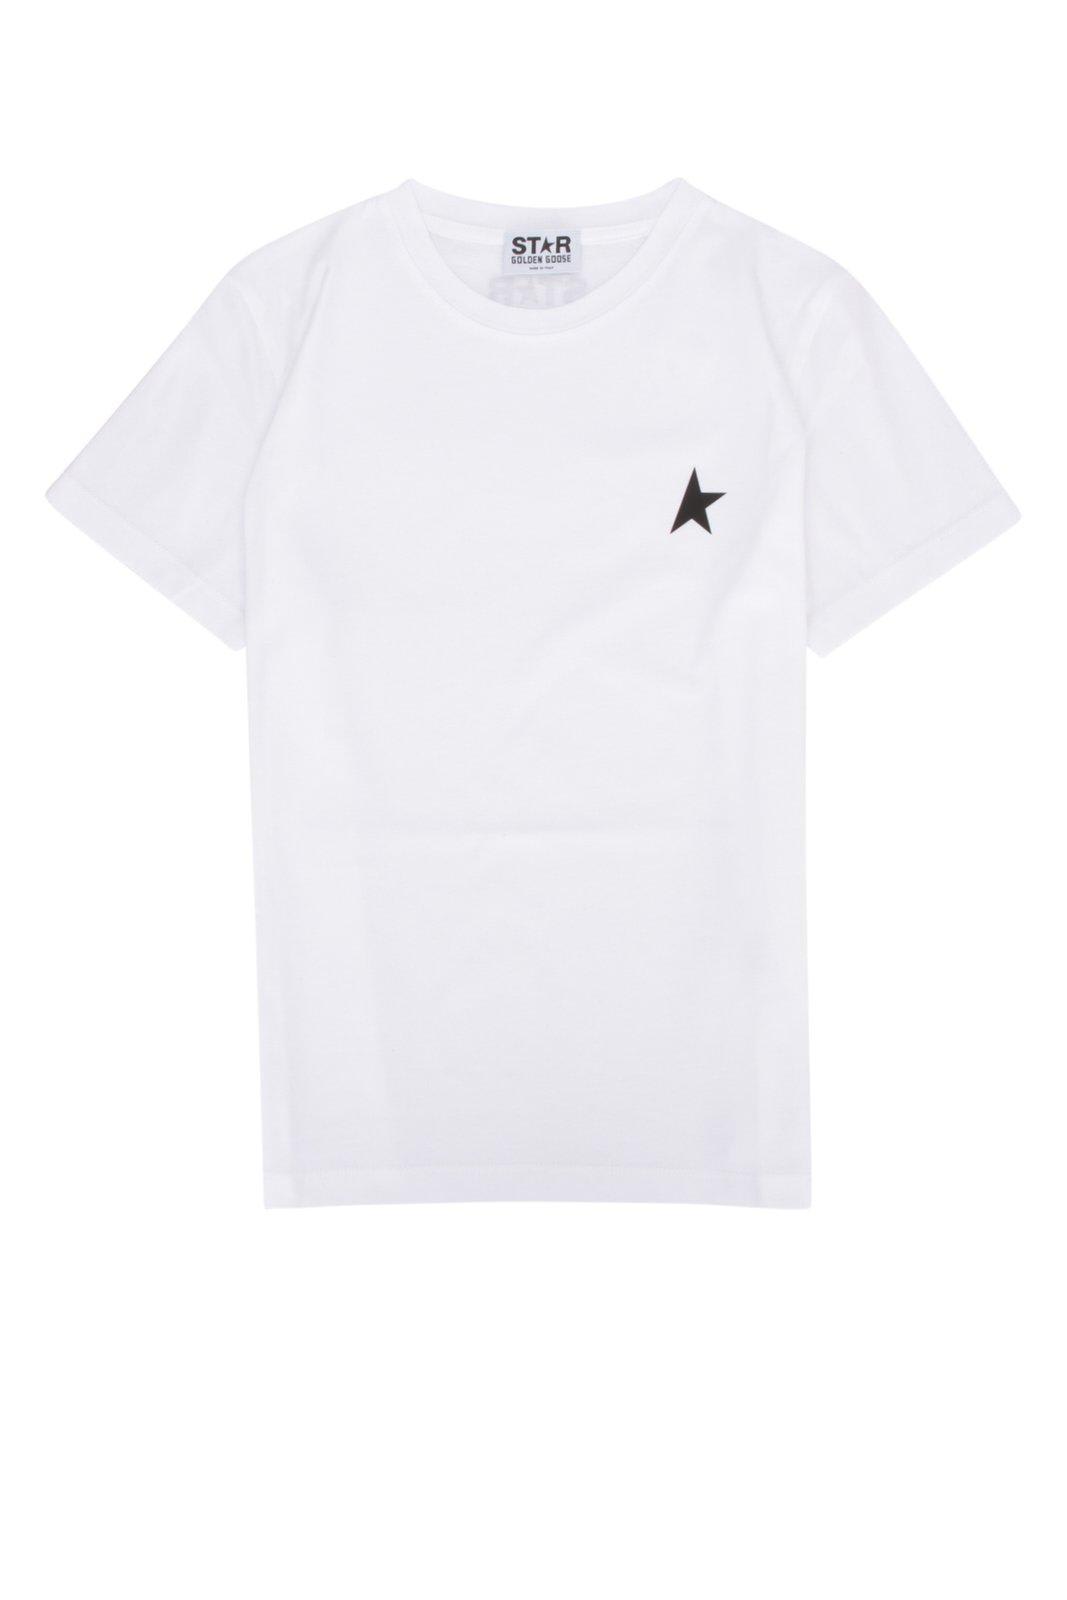 Golden Goose Star Printed Crewneck T-shirt